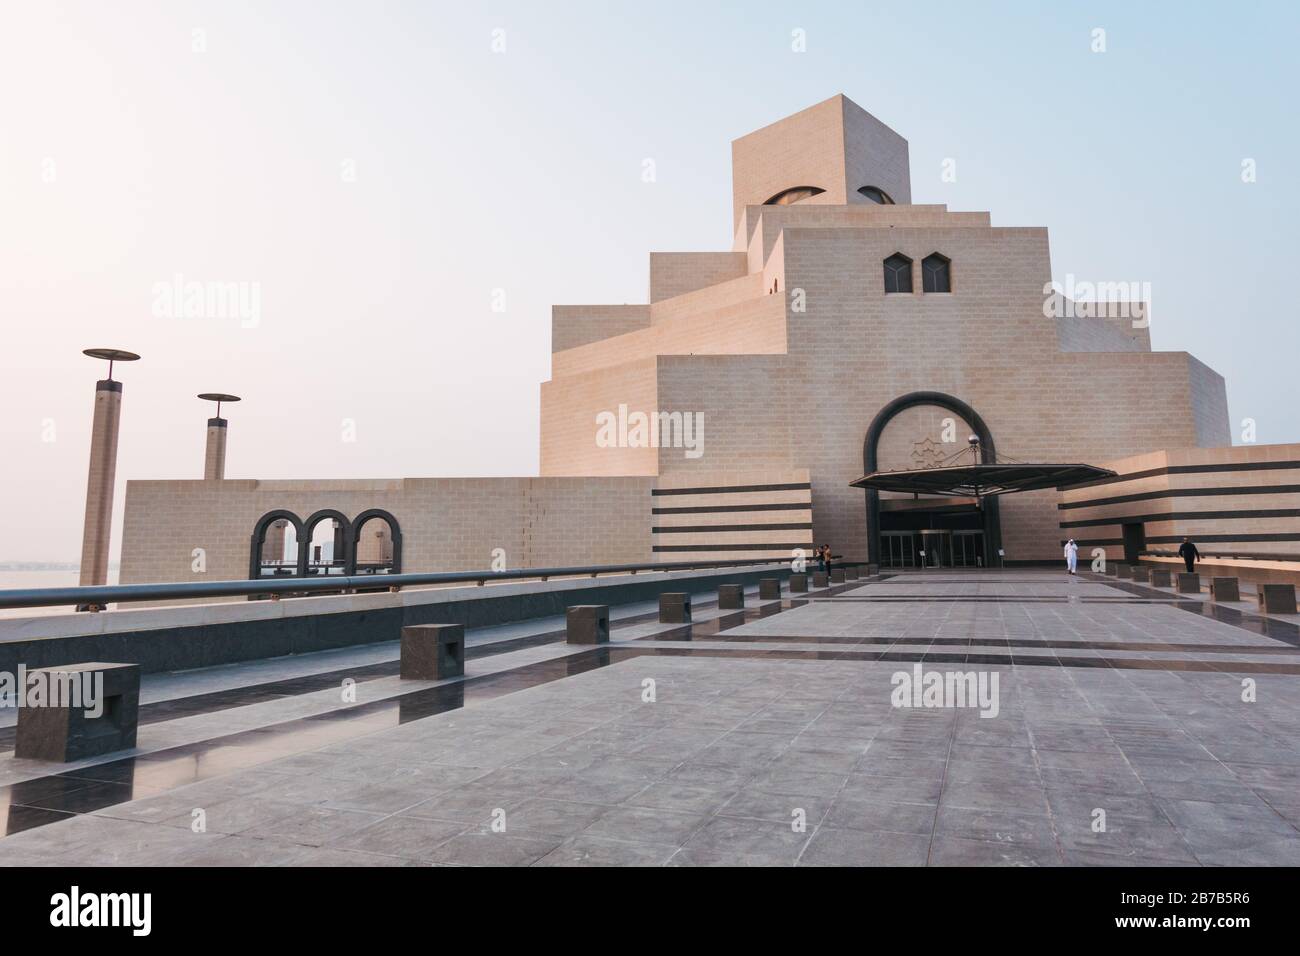 Das Museum für Islamische Kunst, Doha, mit islamischem Architektureinfluss in einem kuschigen Aussehen, entworfen von Ieoh Ming Pei Stockfoto